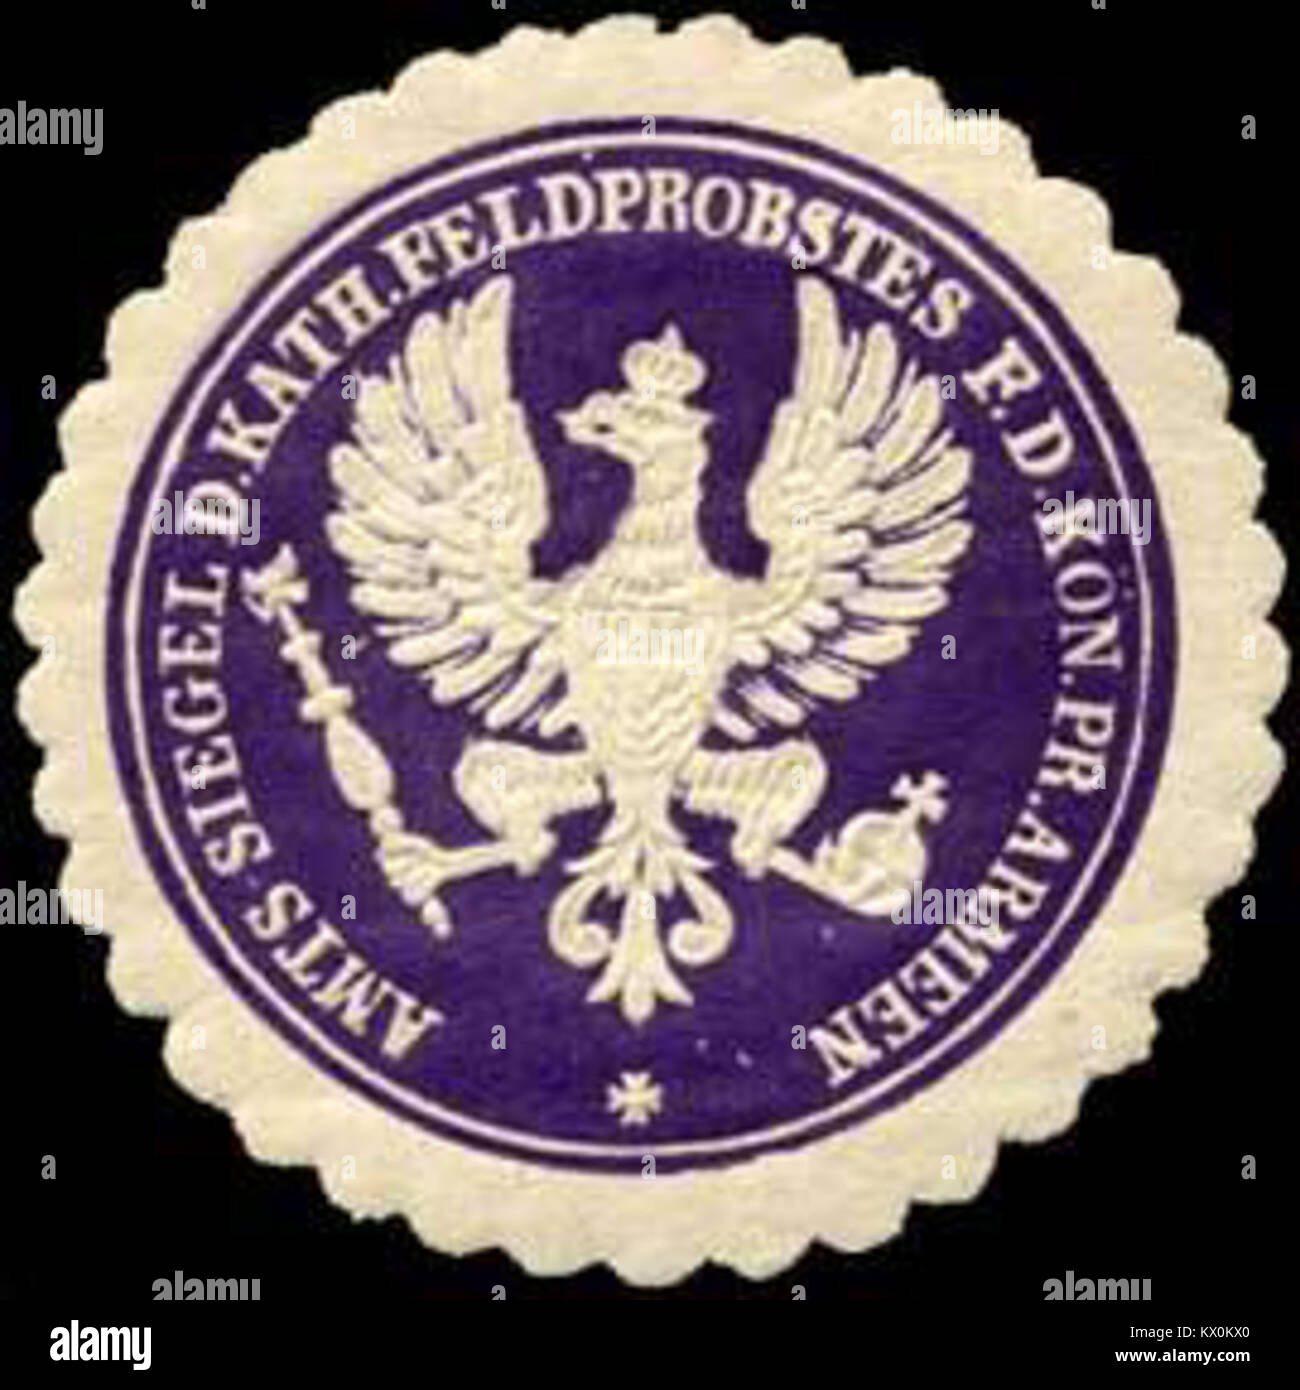 Siegelmarke Amts - Siegel des katholischen Feldprobstes für die Königlich Preussischen Armeen W0223329 Foto Stock